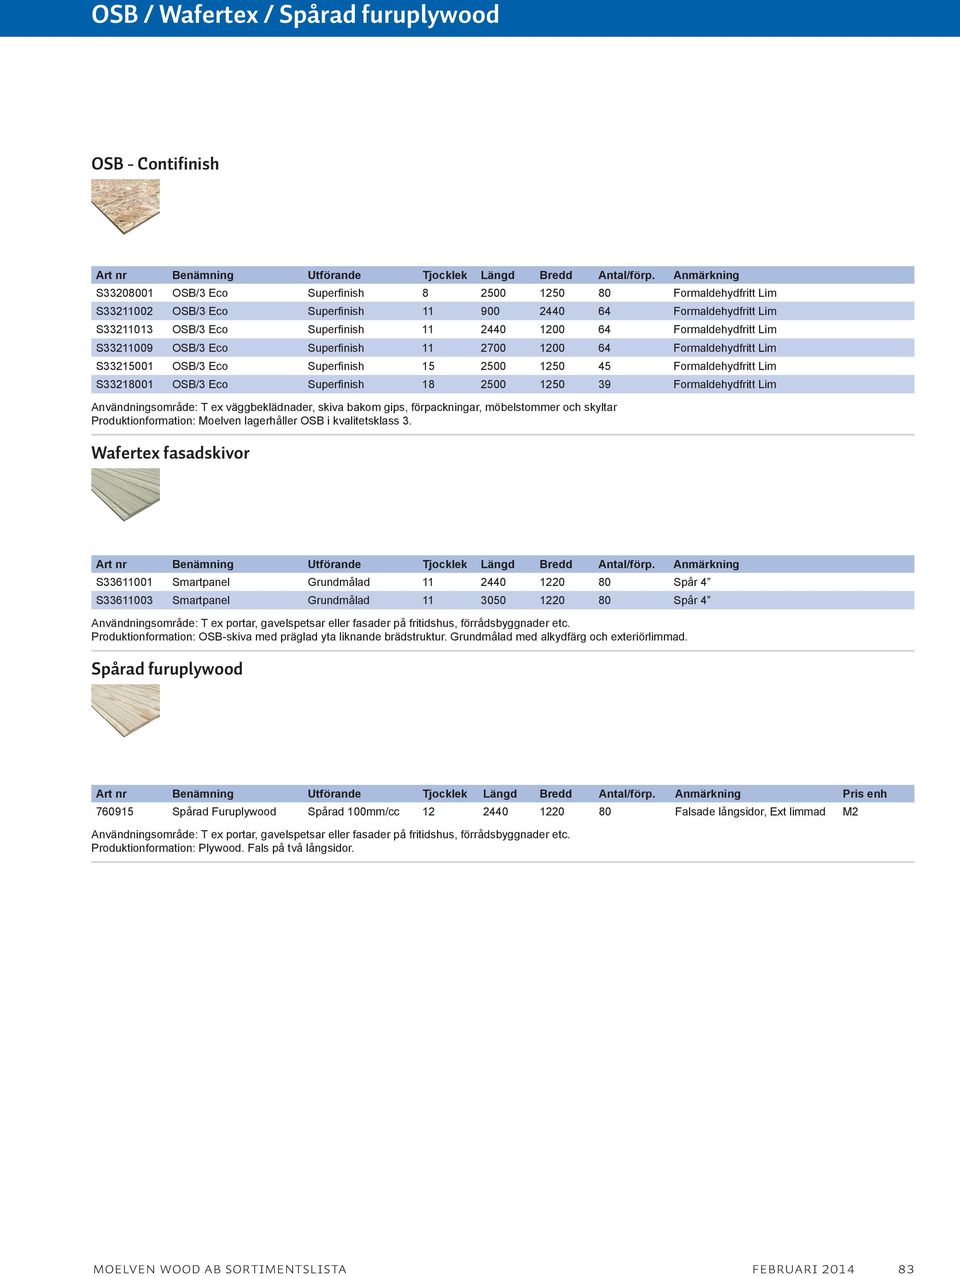 S33218001 OSB/3 Eco Superfinish 18 2500 1250 39 Formaldehydfritt Lim Användningsområde: T ex väggbeklädnader, skiva bakom gips, förpackningar, möbelstommer och skyltar Produktionformation: Moelven